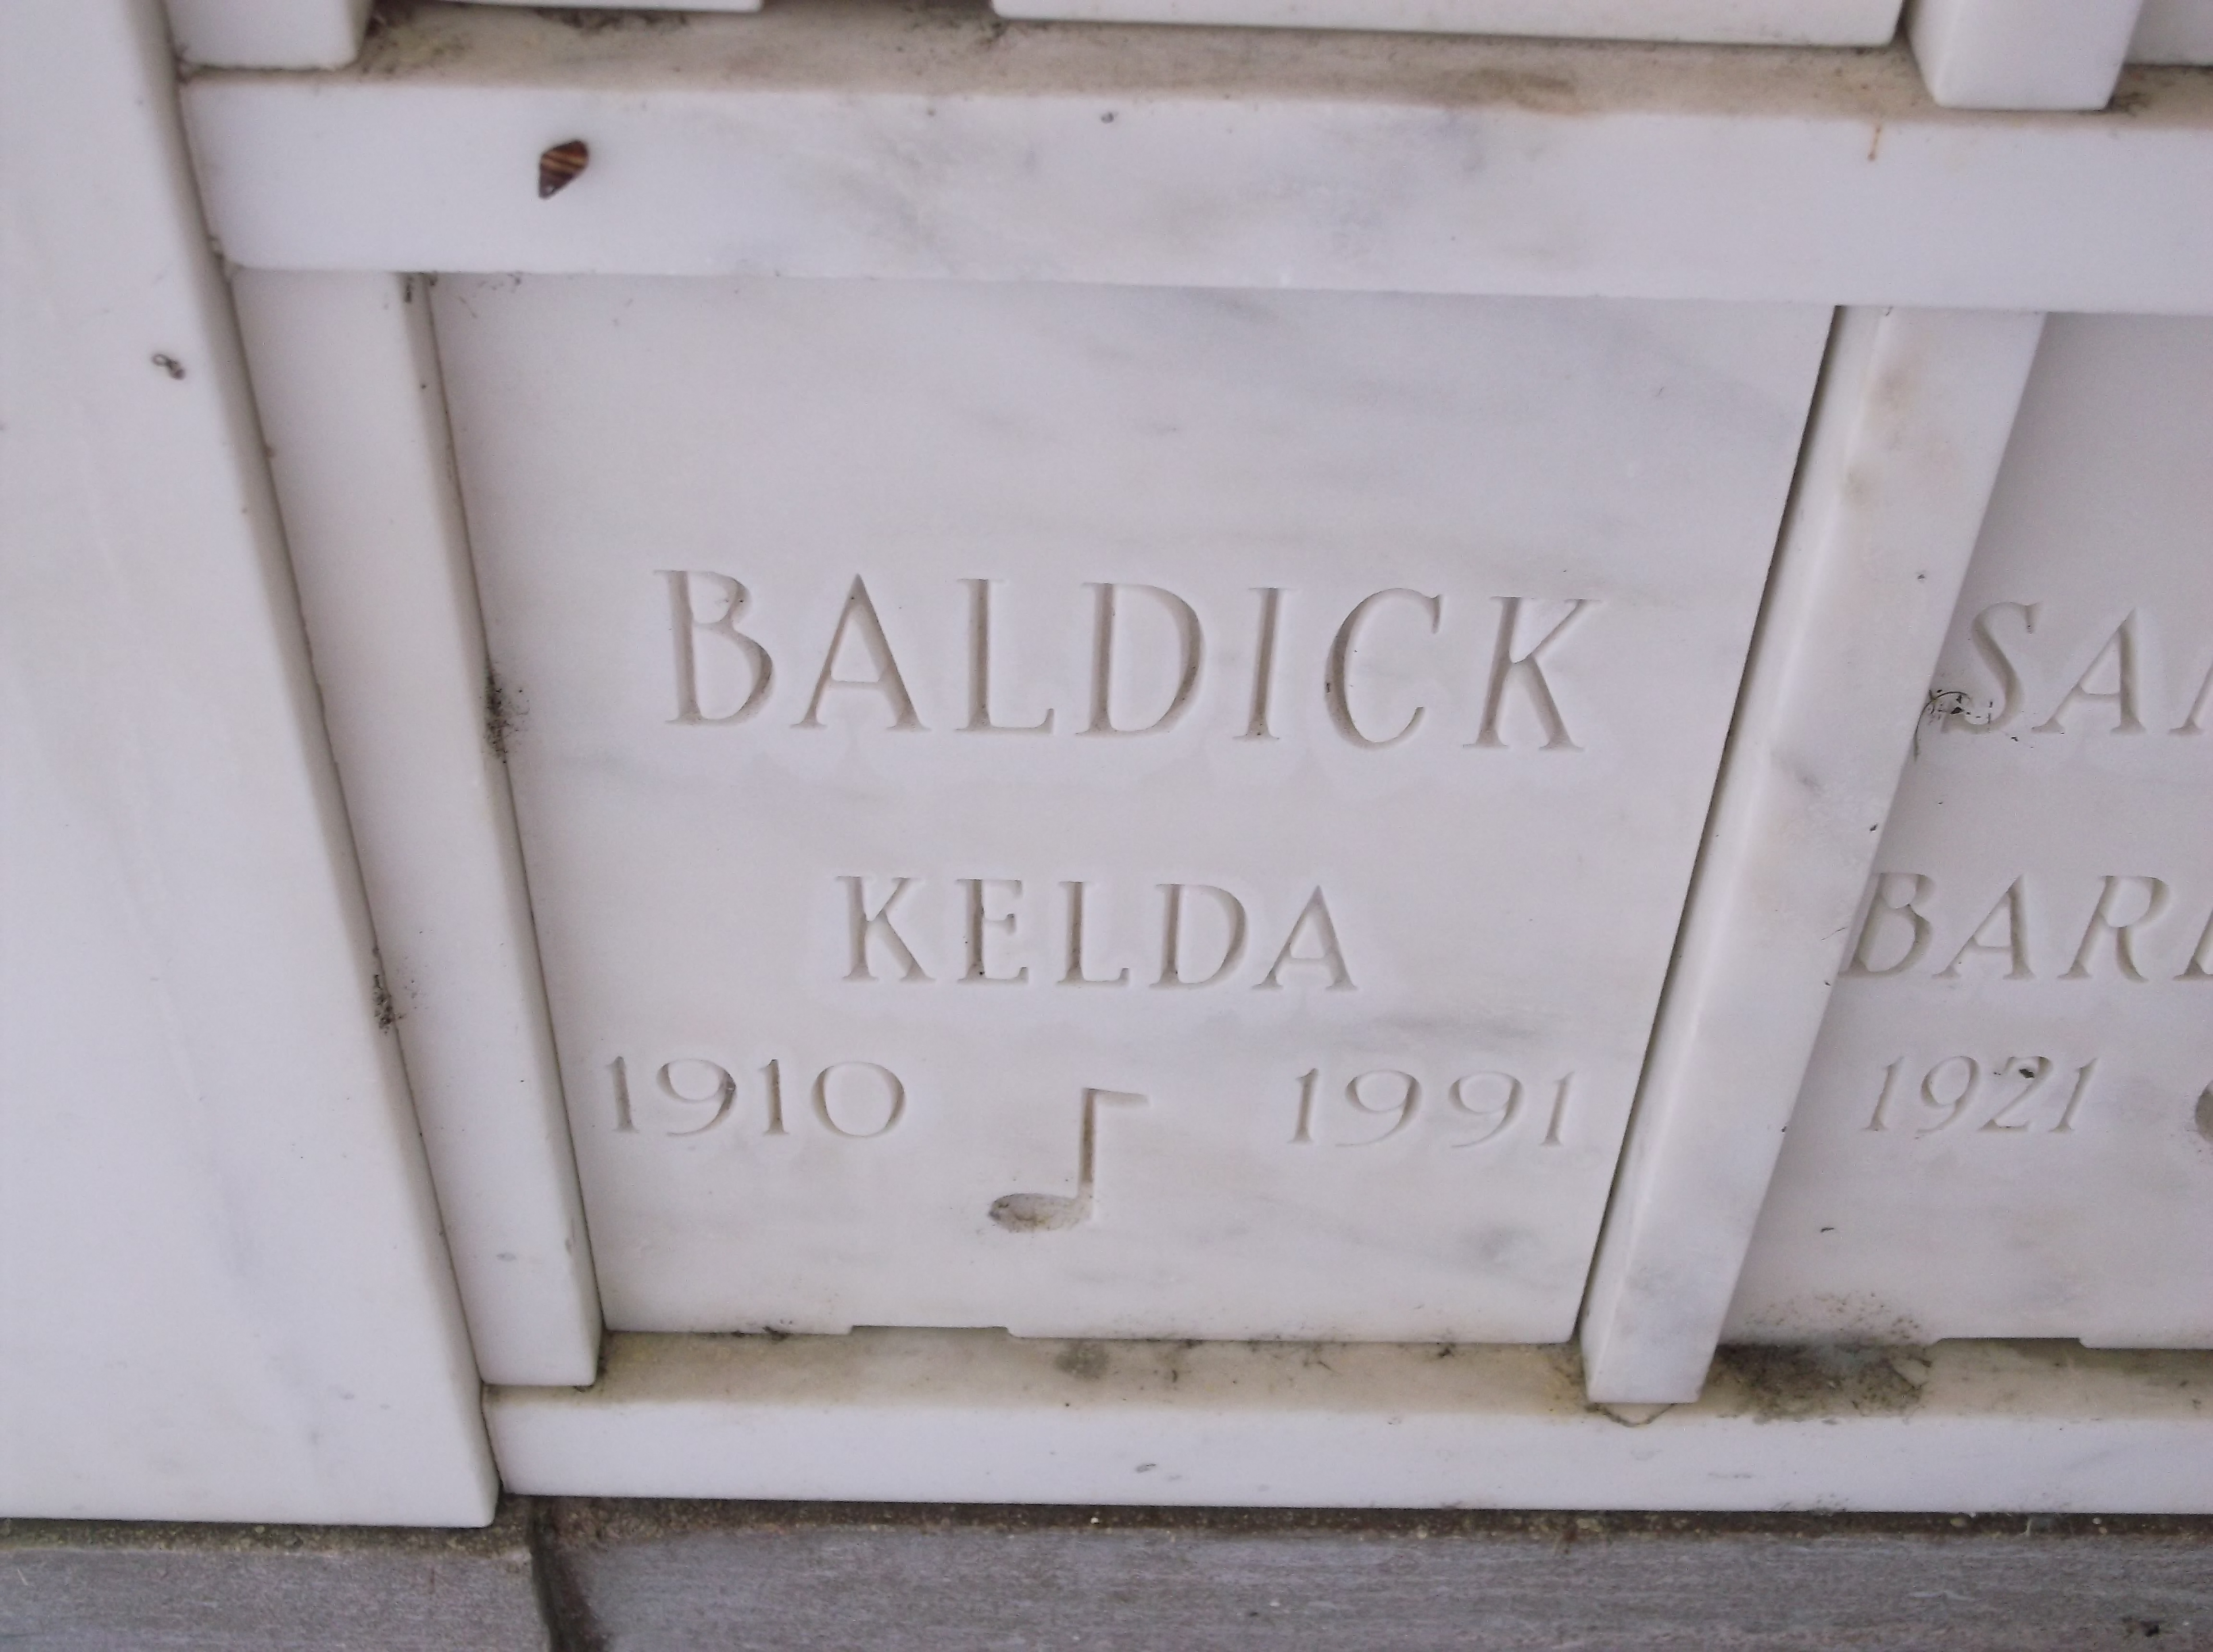 Kelda Baldick